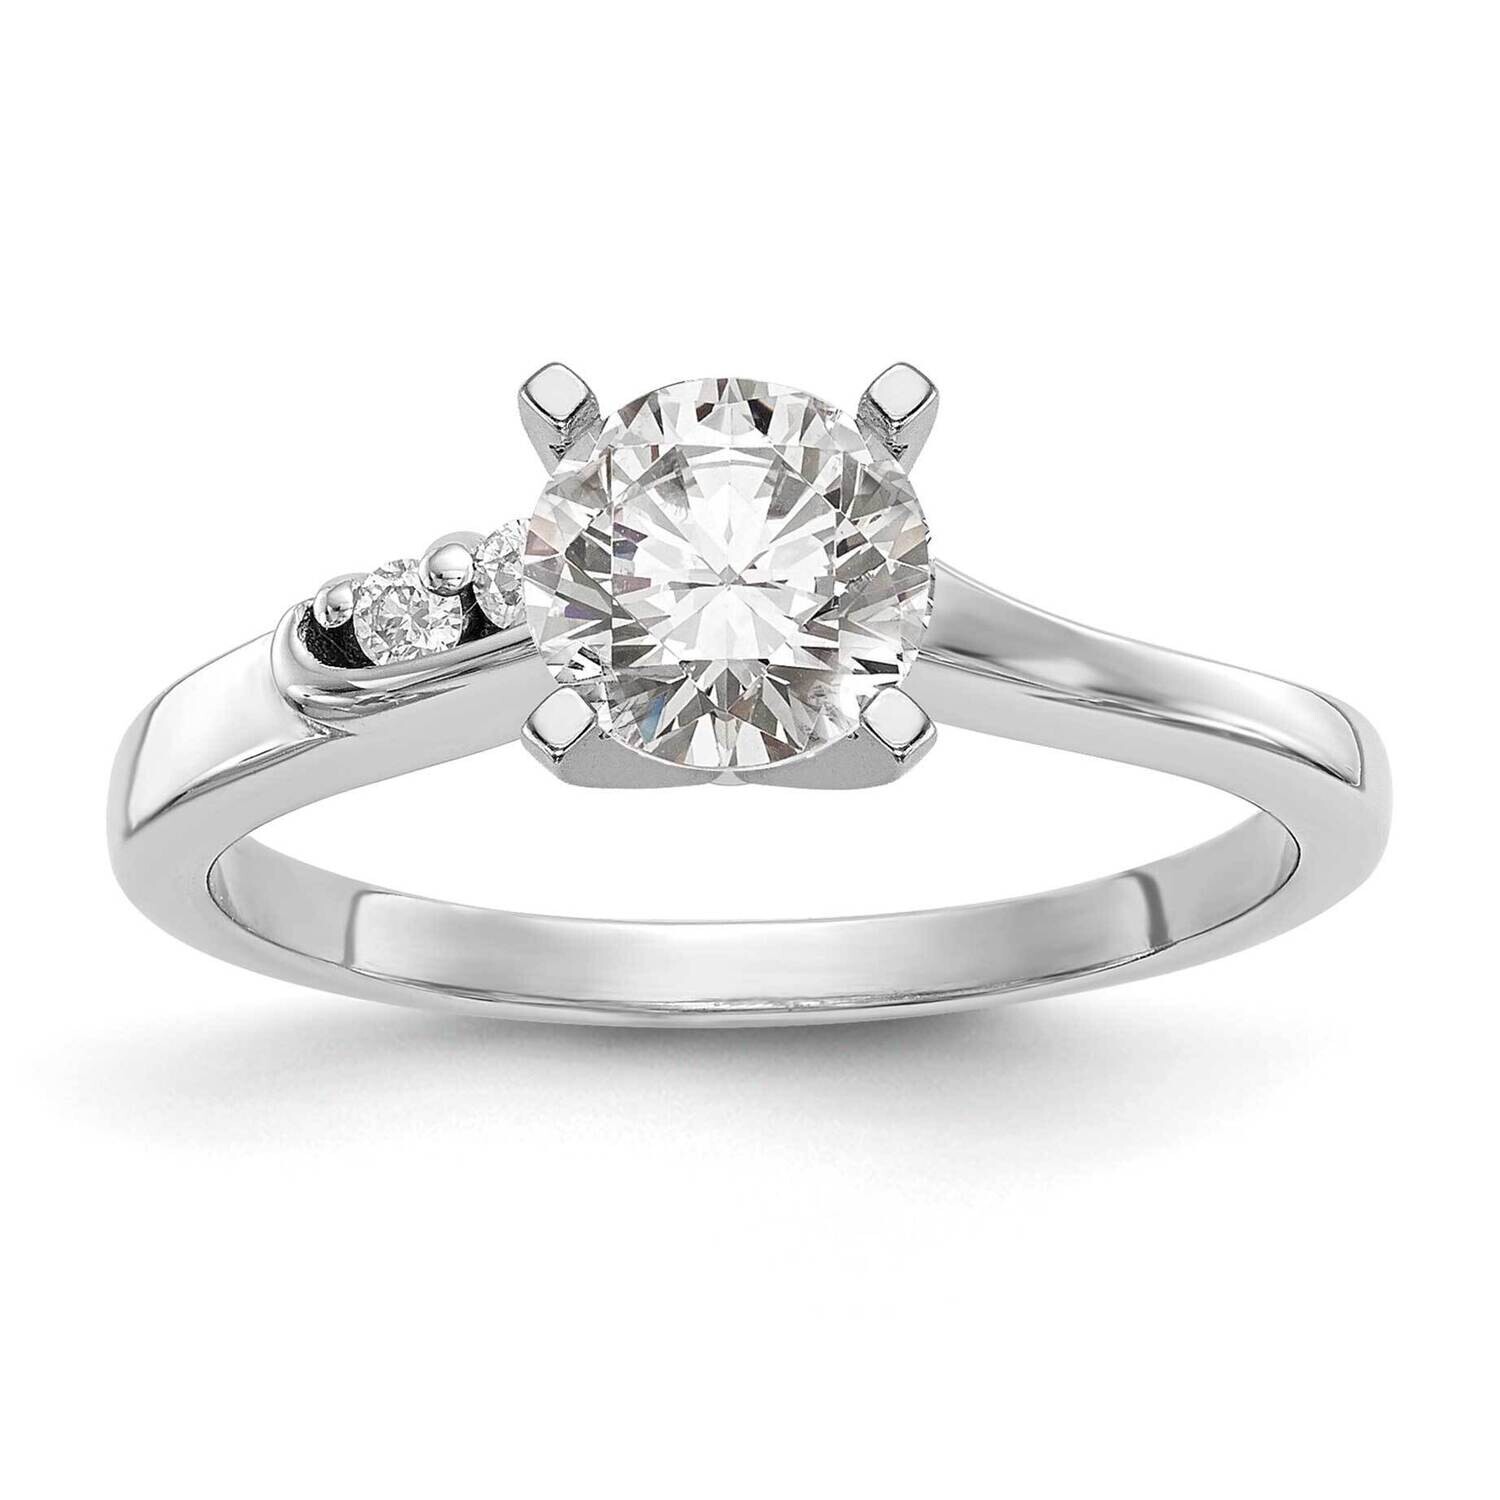 By-Pass Peg Set 1/20 Carat Diamond Semi-Mount Engagement Ring 14k White Gold RM2511E-006-WAA